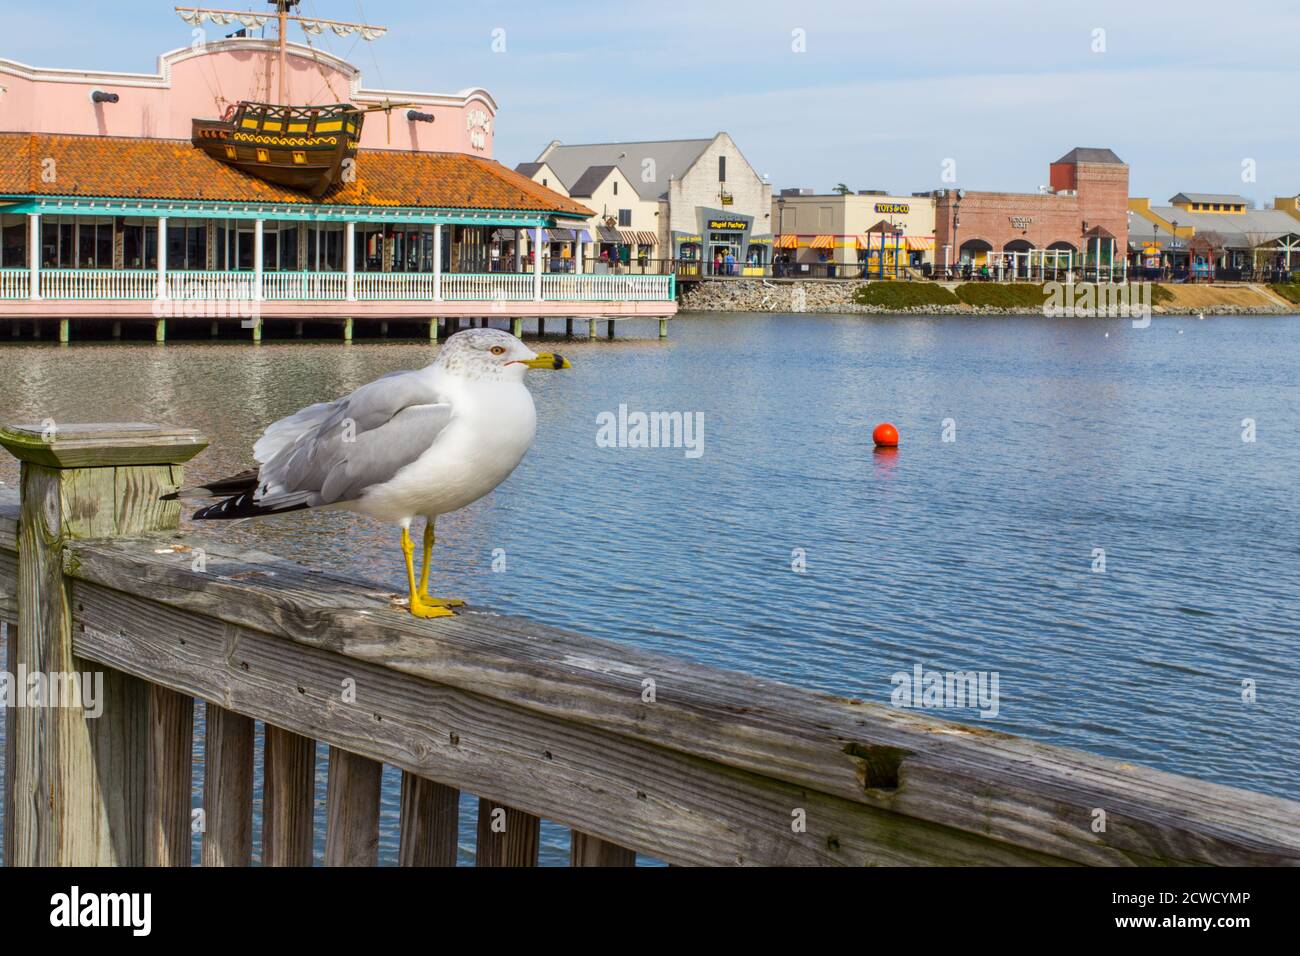 Seagull bénéficie de la vue sur le populaire parc de shopping et d'attractions de Broadway à la plage sur le Grand Strand en Caroline du Sud. Banque D'Images